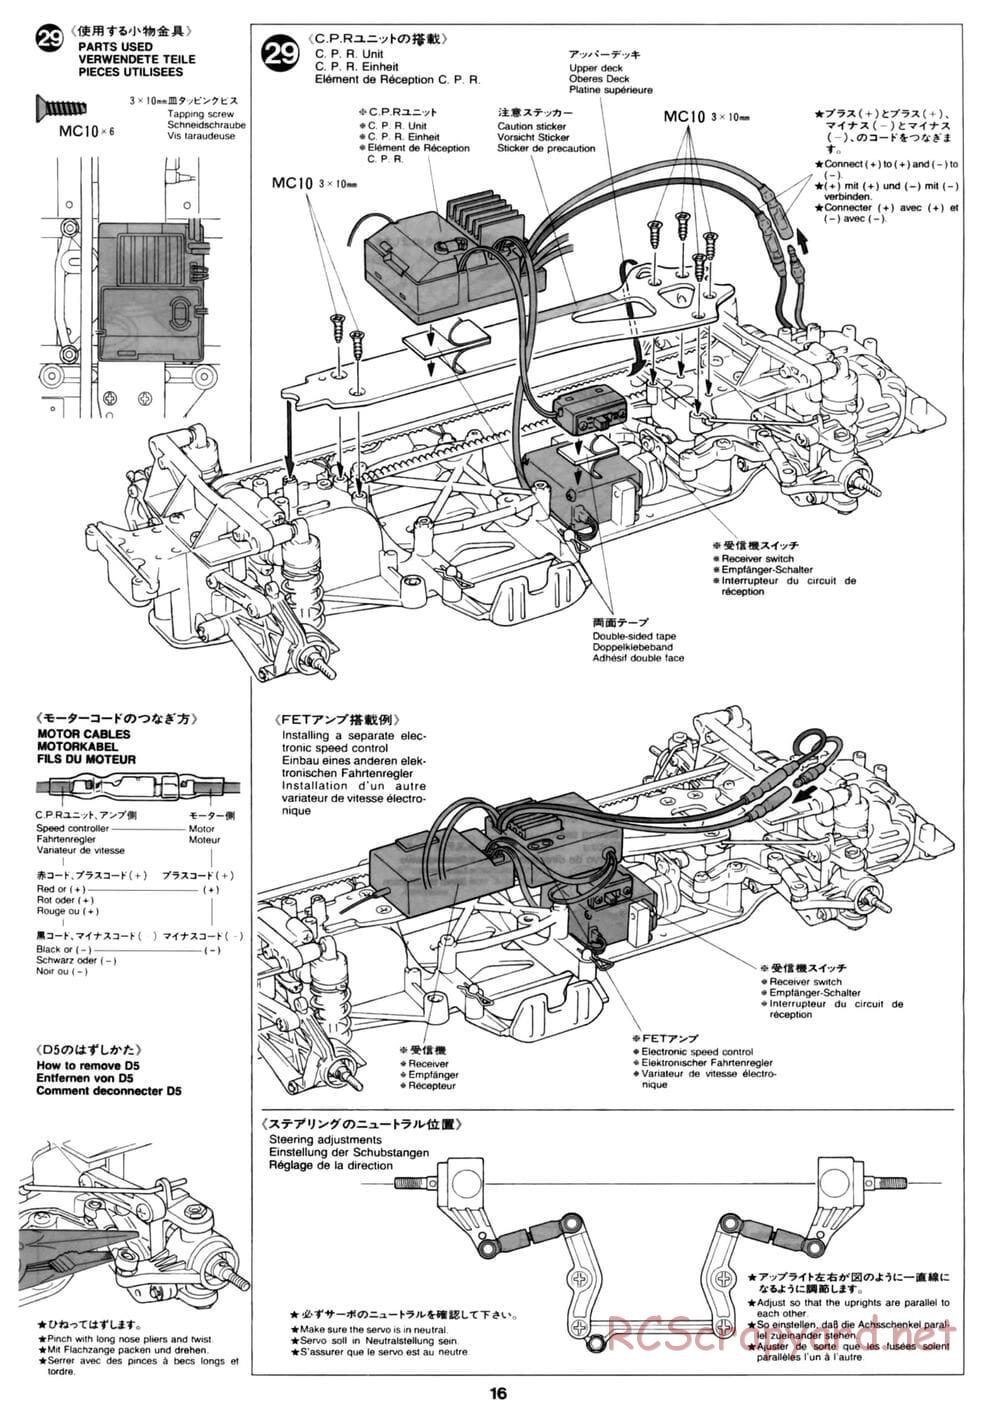 Tamiya - David Jun TA03F Pro Chassis - Manual - Page 16